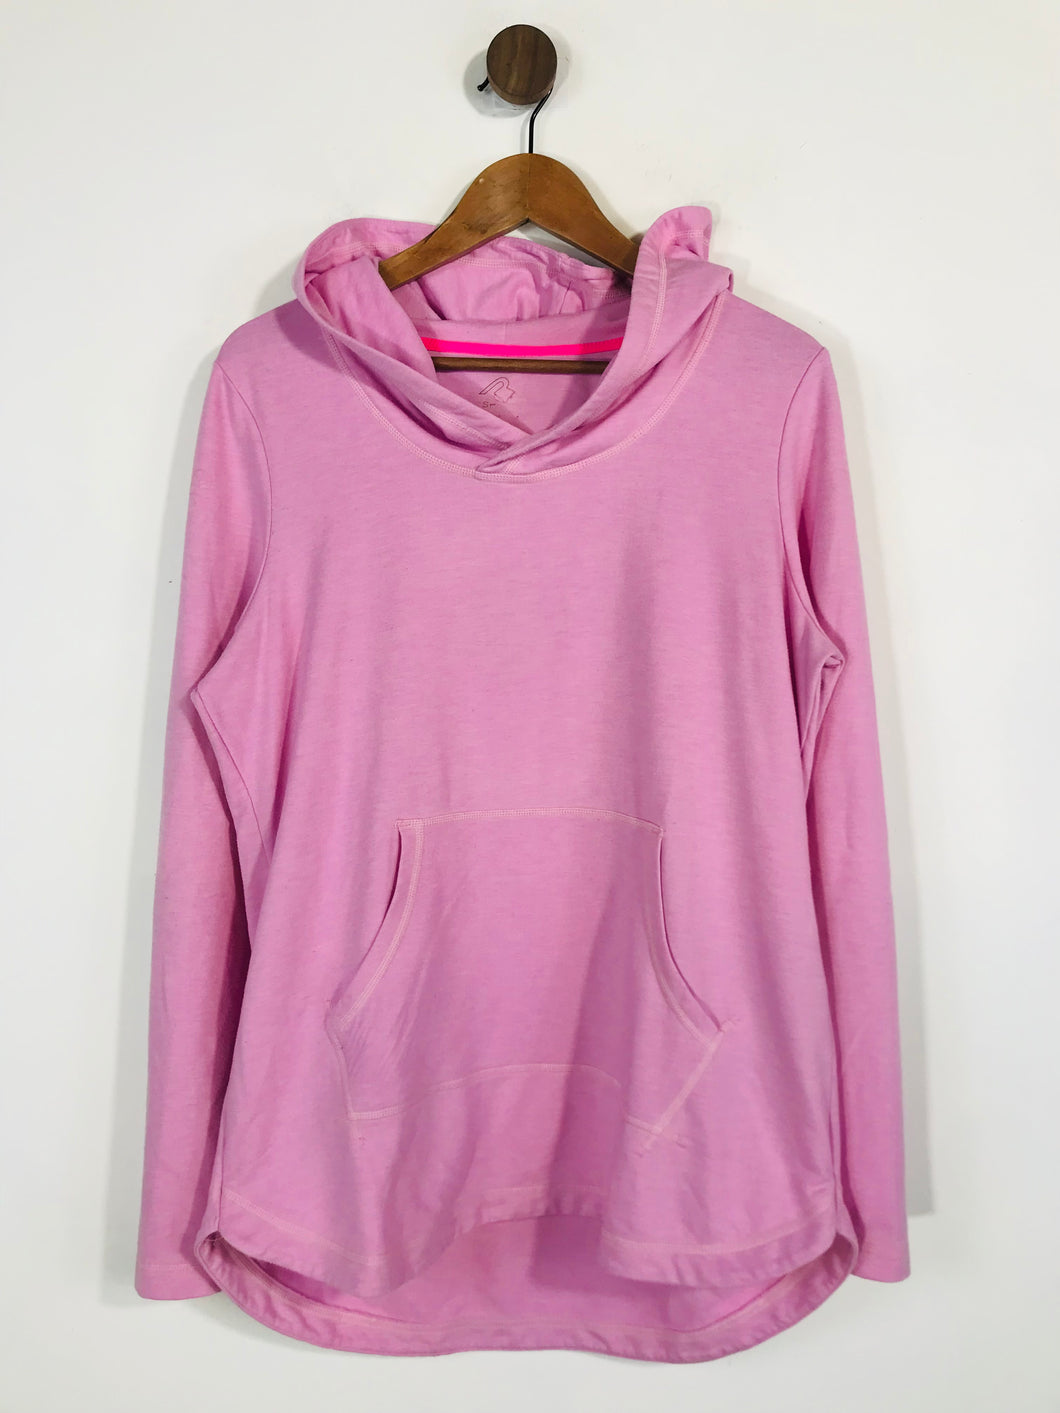 Rodeo Women's Sweatshirt | M UK10-12 | Pink